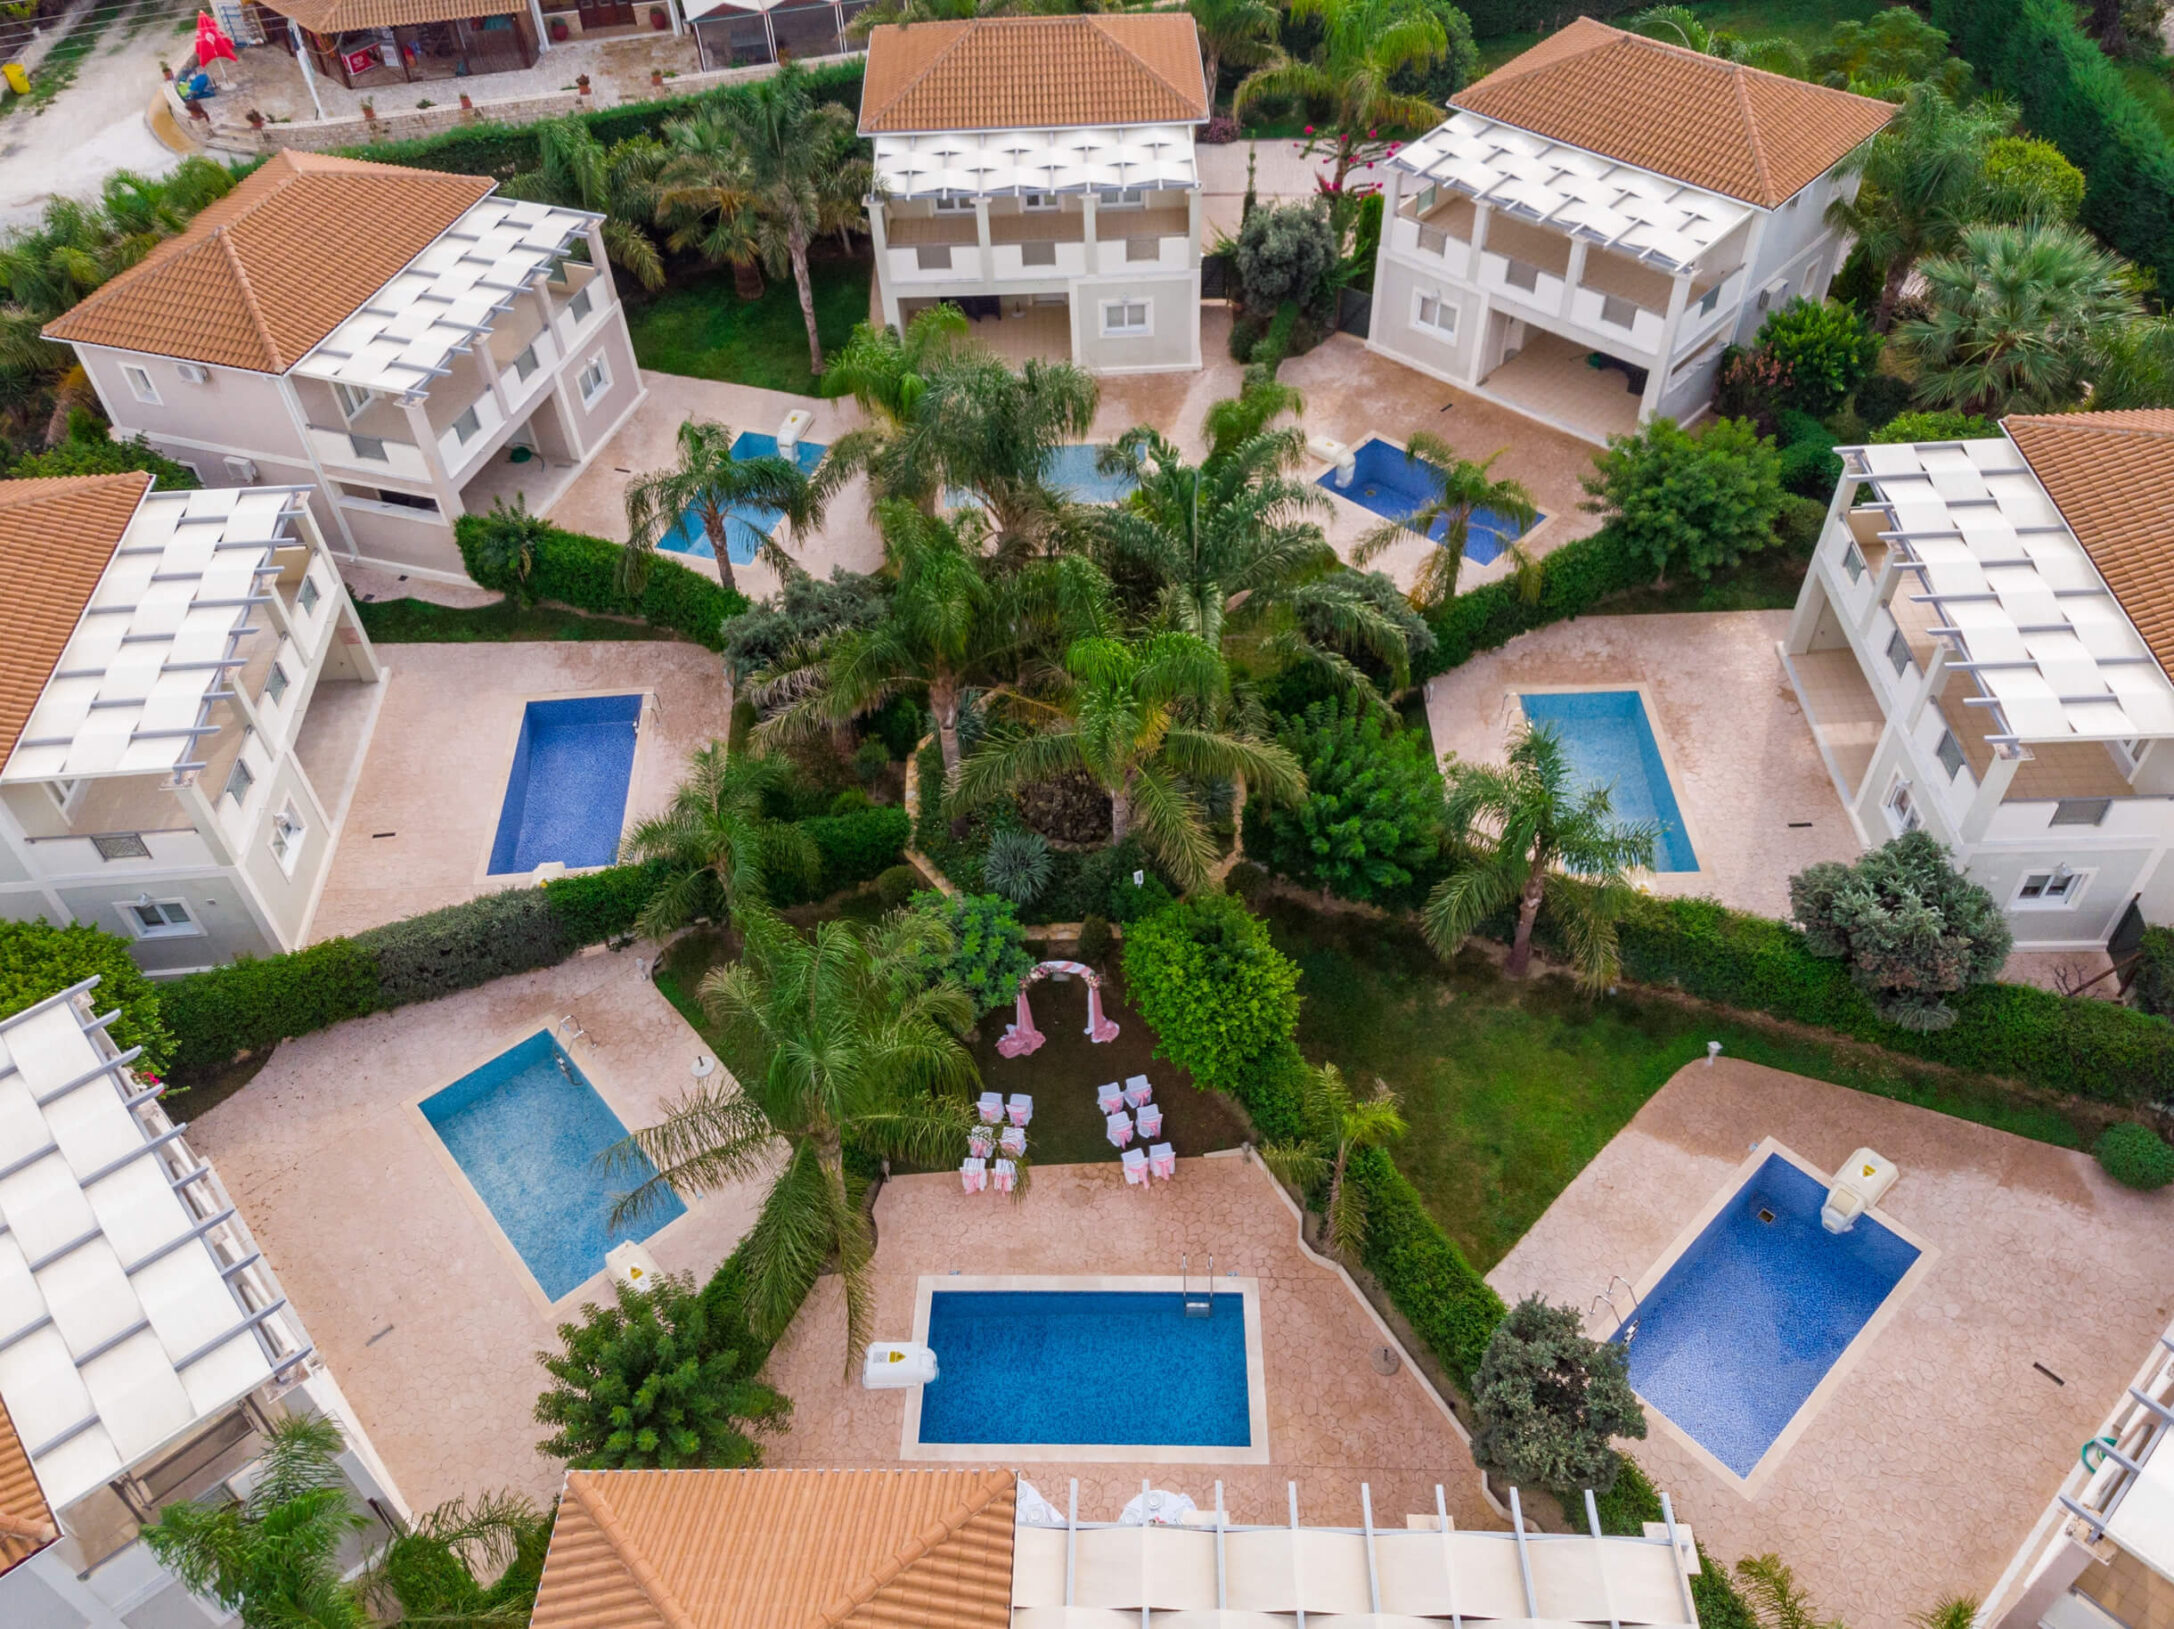 Aerial View of the 8 villas, at Mamfredas Resort